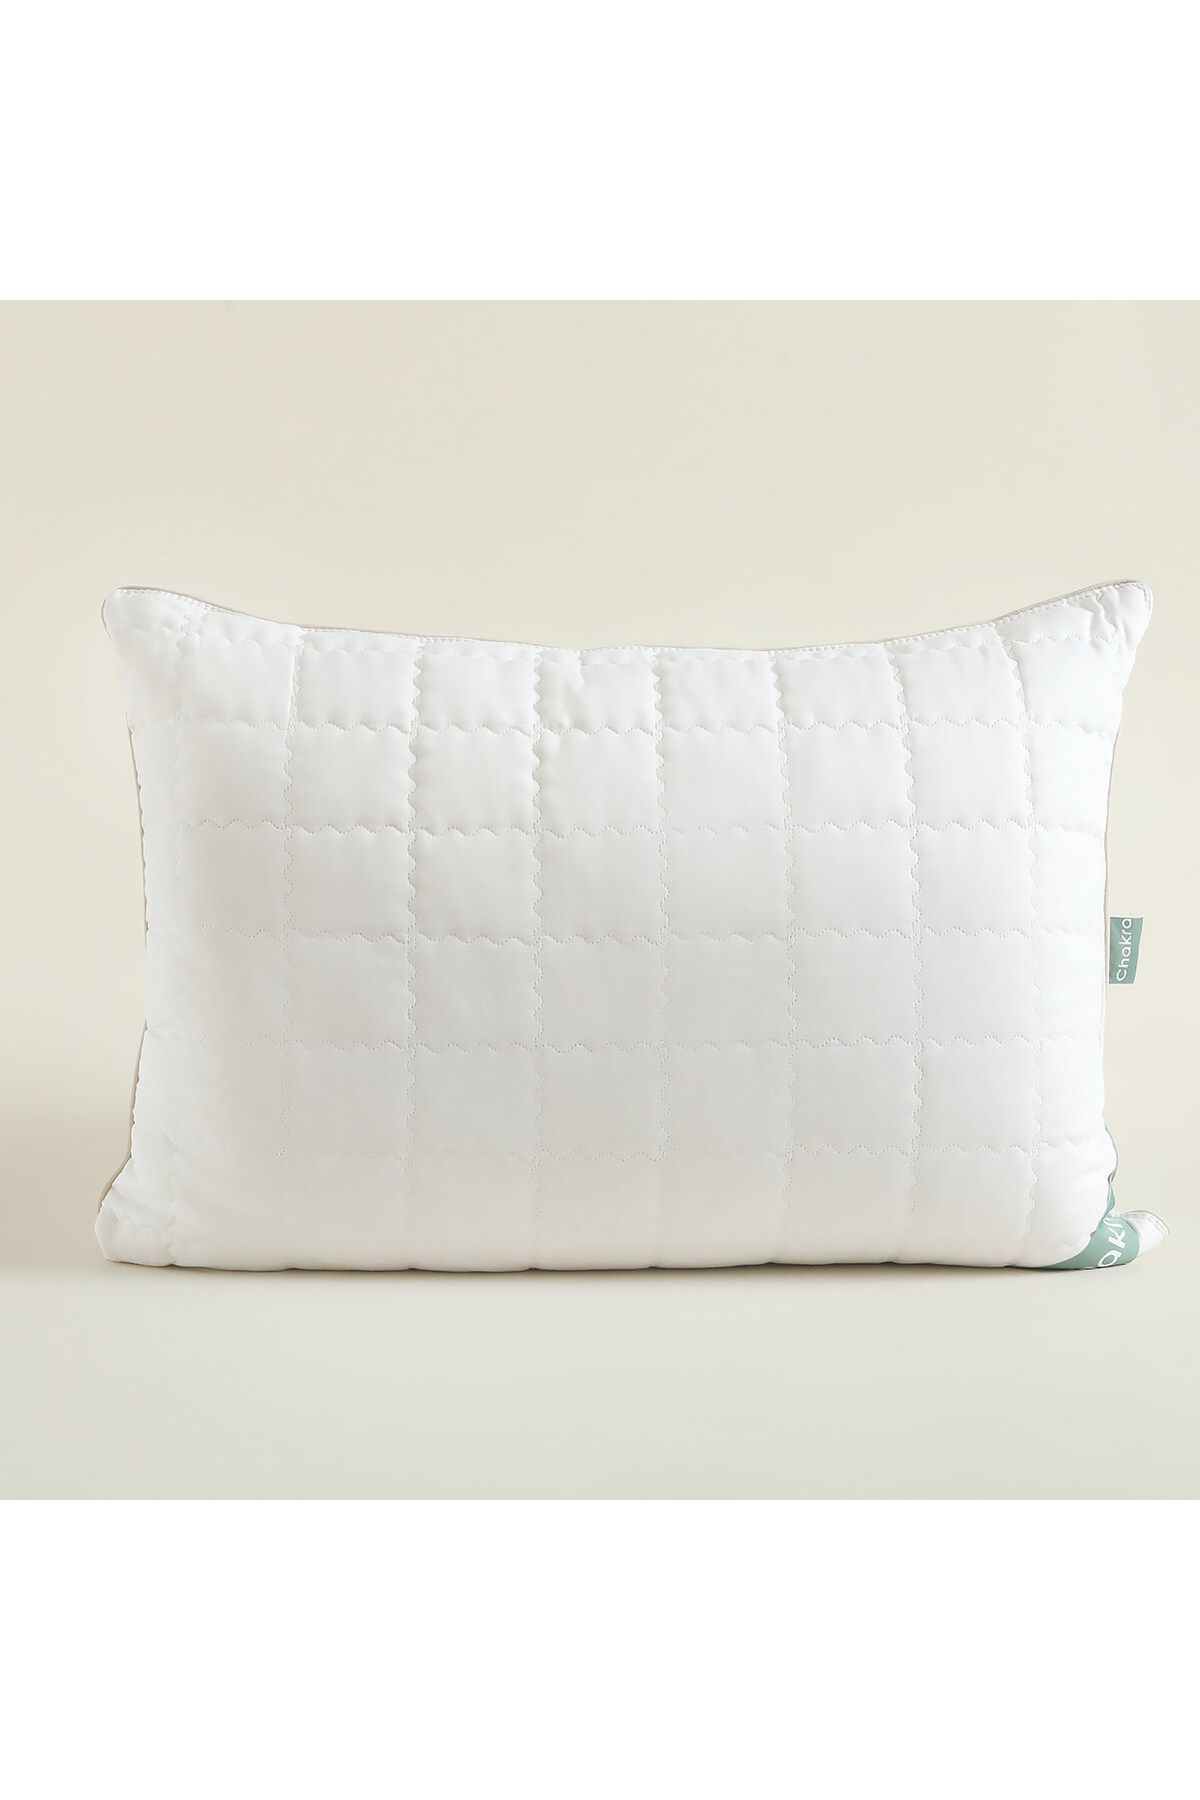 Chakra Kapok Yastık 50x70 Cm Beyaz